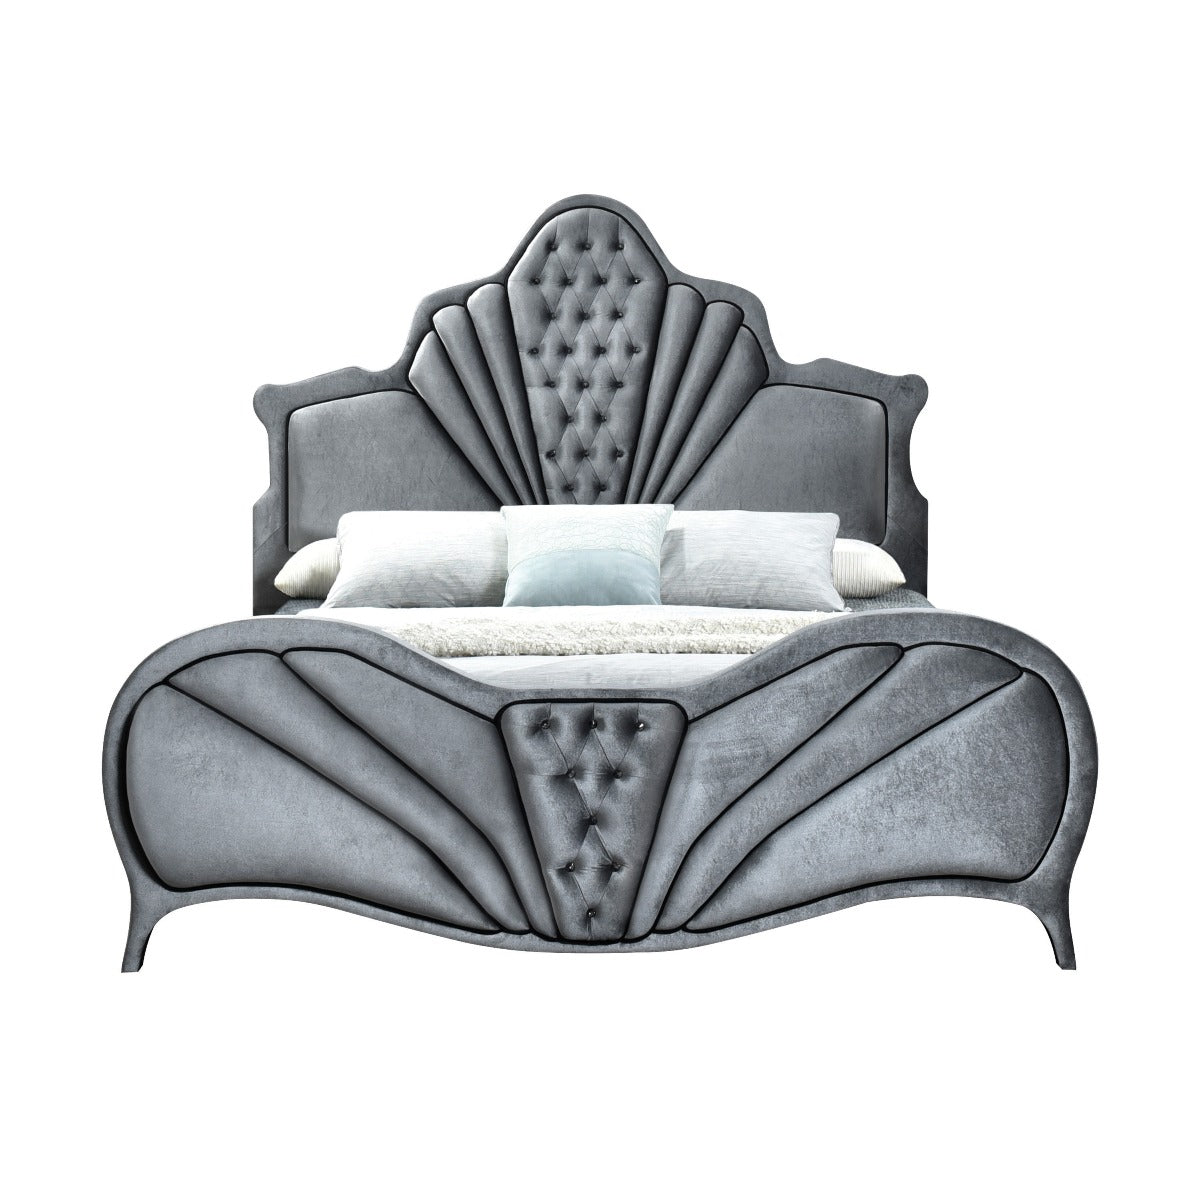 ACME Furniture Beds - ACME Dante Queen Bed, Gray Velvet